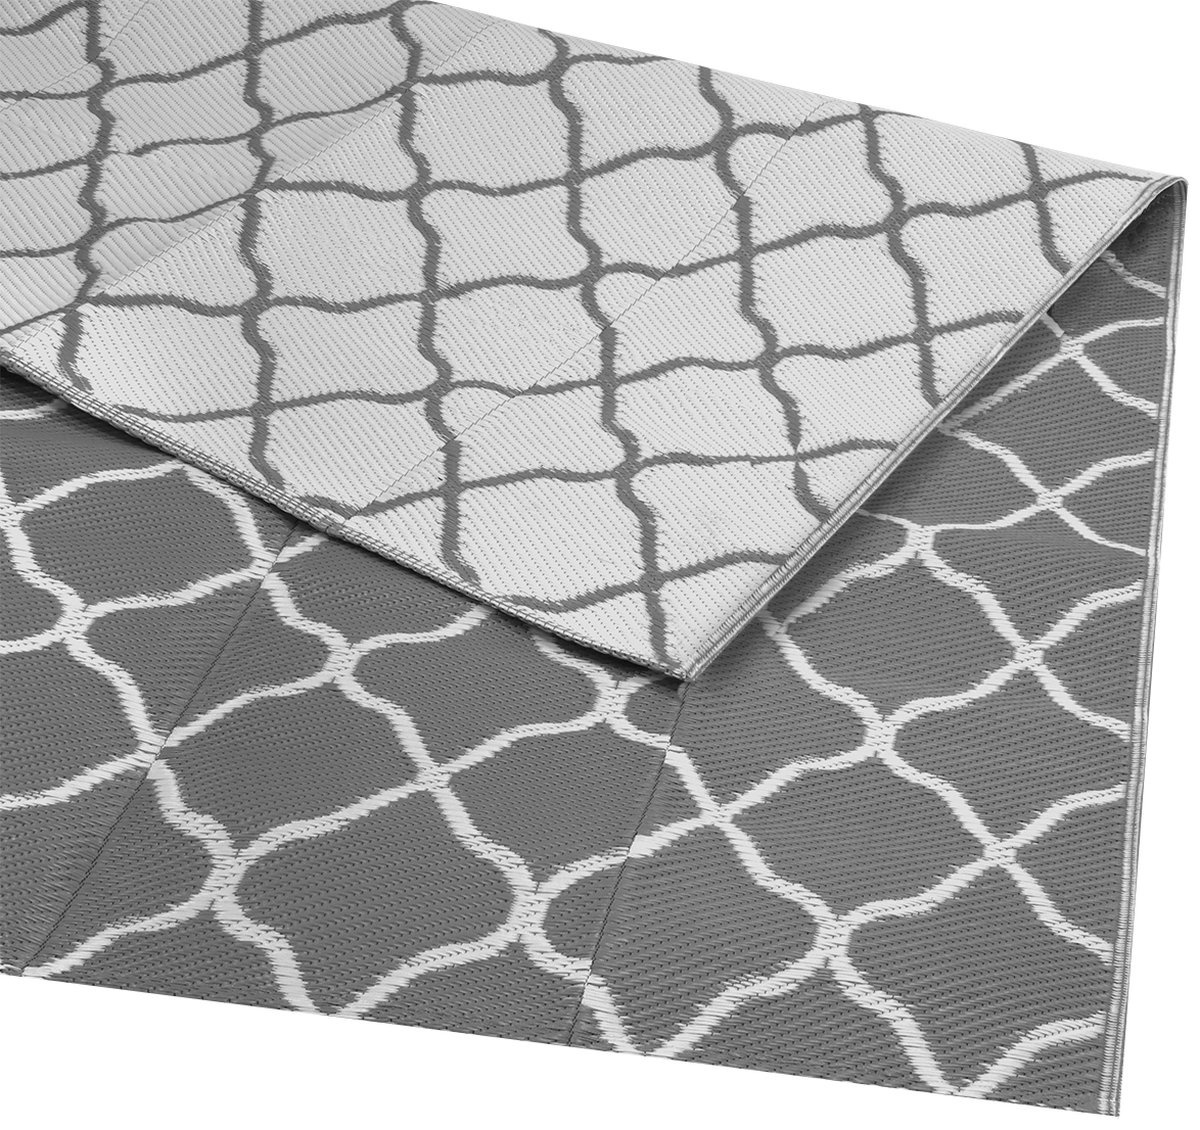 Muster günstig Kaufen-LifeGoods Teppich für den Außenbereich - 183x290CM - Gartenteppich - Teppich für den Außenbereich - Reversibel - Inkl. Tragetasche - Mit Muster - Grau/Weiß. LifeGoods Teppich für den Außenbereich - 183x290CM - Gartentepp